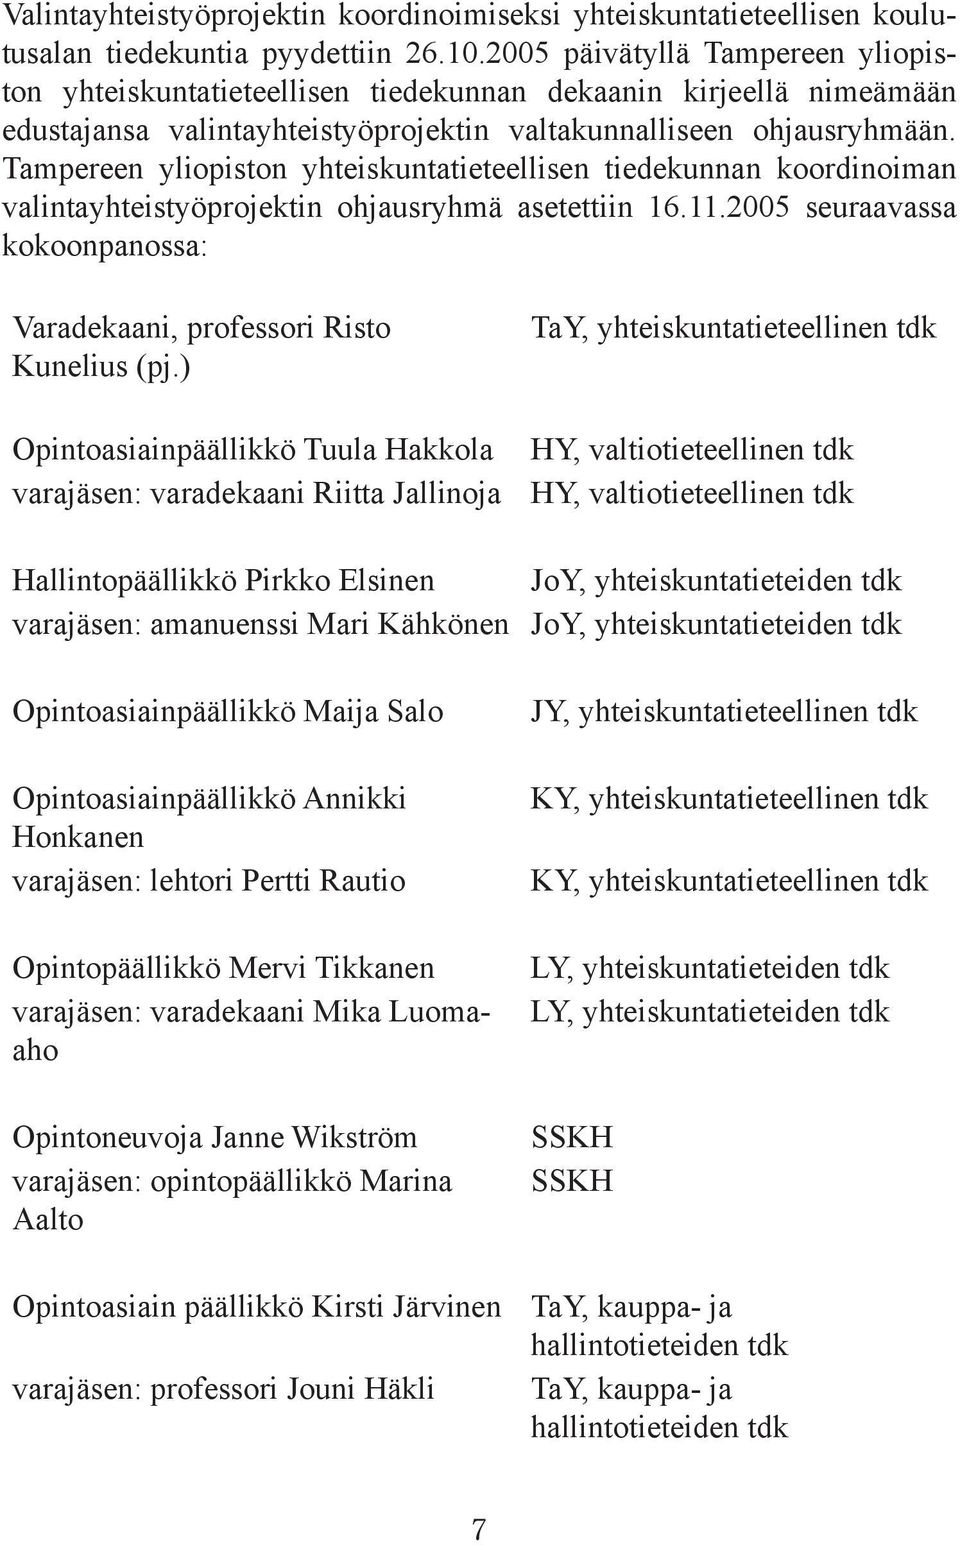 Tampereen yliopiston yhteiskuntatieteellisen tiedekunnan koordinoiman valintayhteistyöprojektin ohjausryhmä asetettiin 16.11.2005 seuraavassa kokoonpanossa: Varadekaani, professori Risto Kunelius (pj.